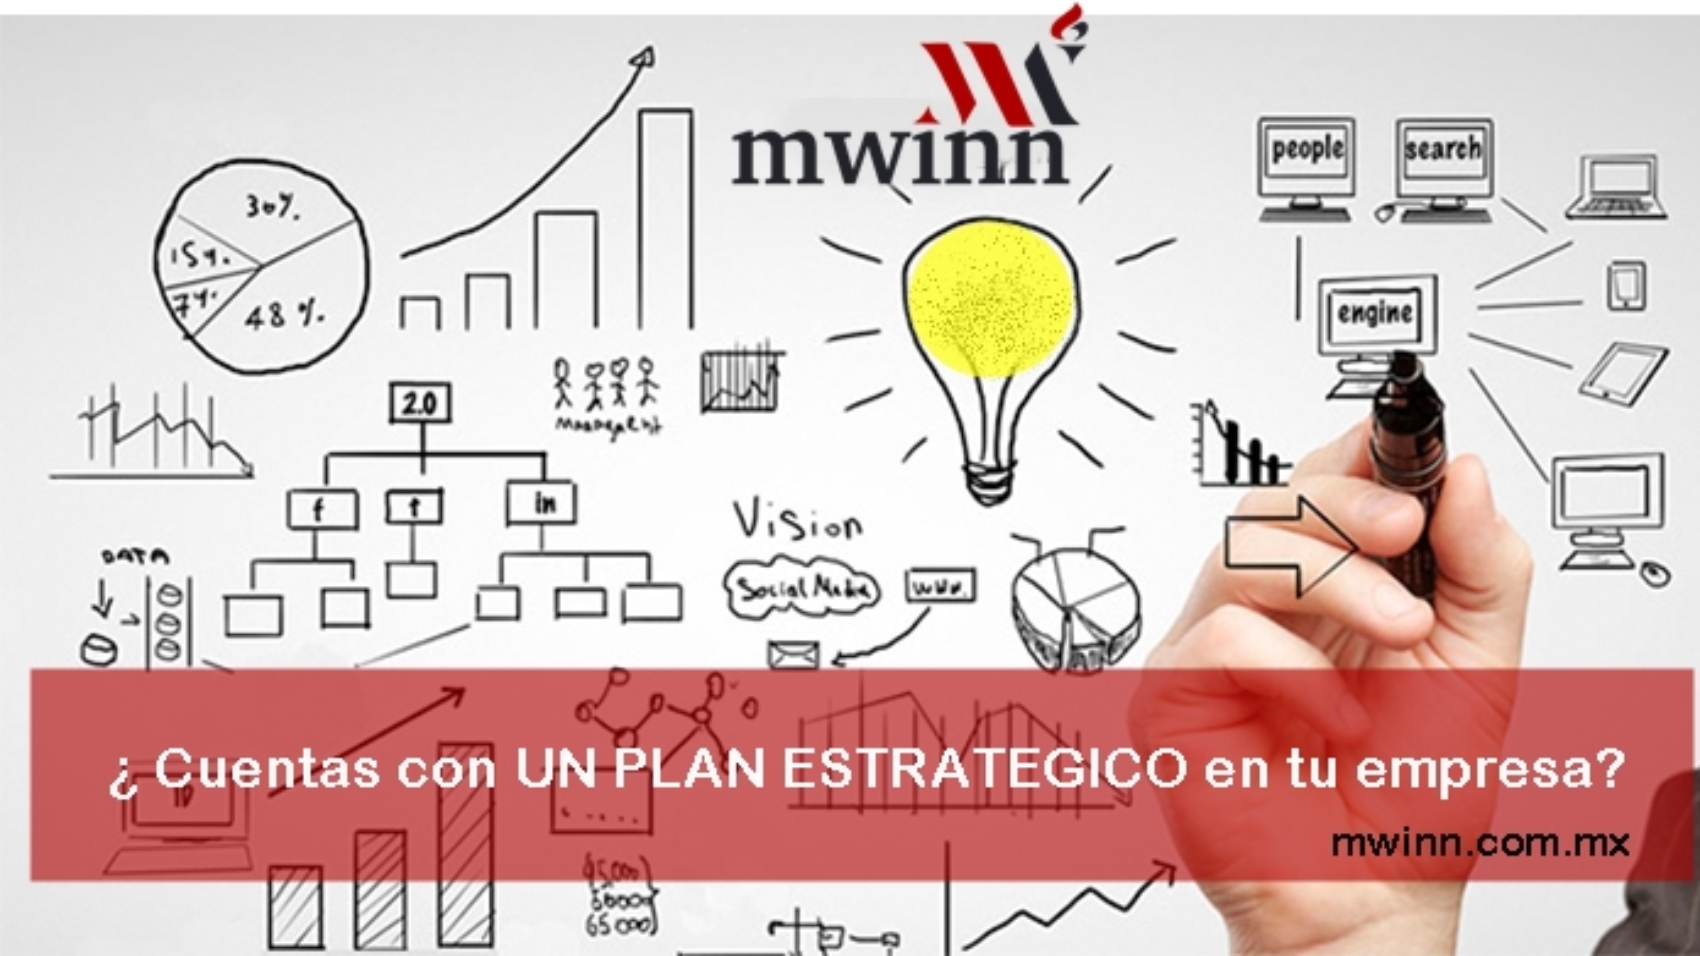 plan-estrategico-de-una-empresa-MWINN-6-SEPT-blog